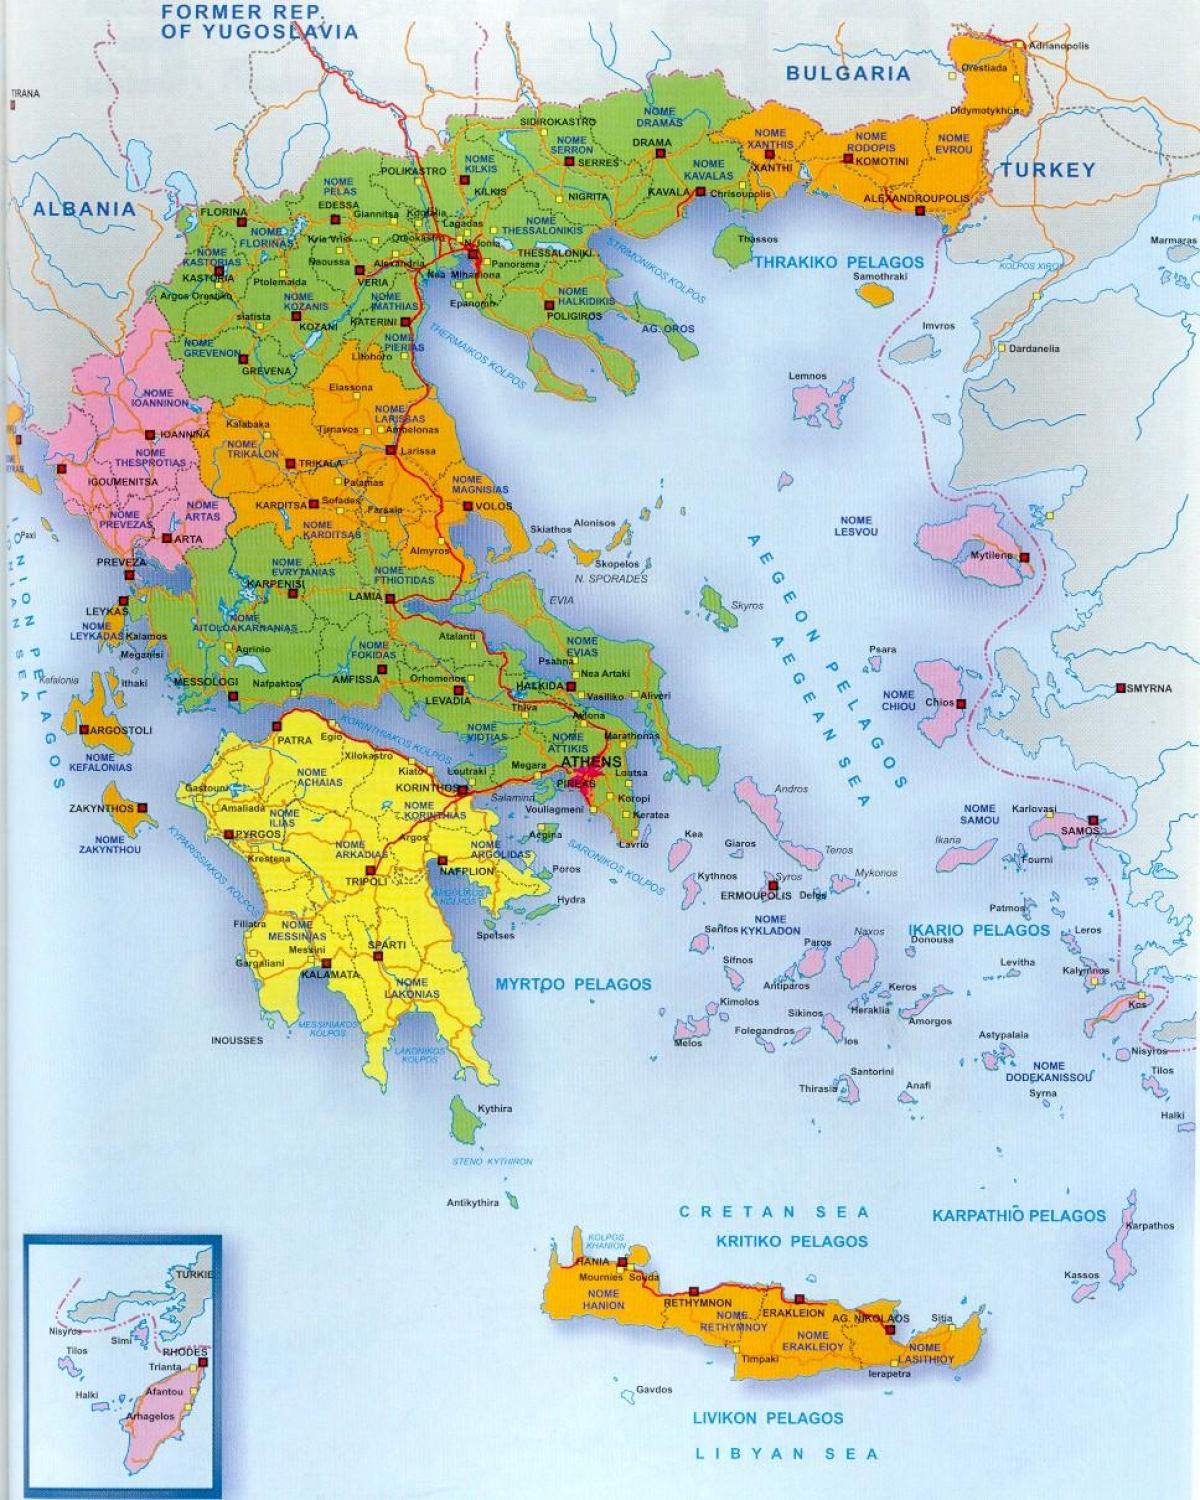 Grecia pe o hartă